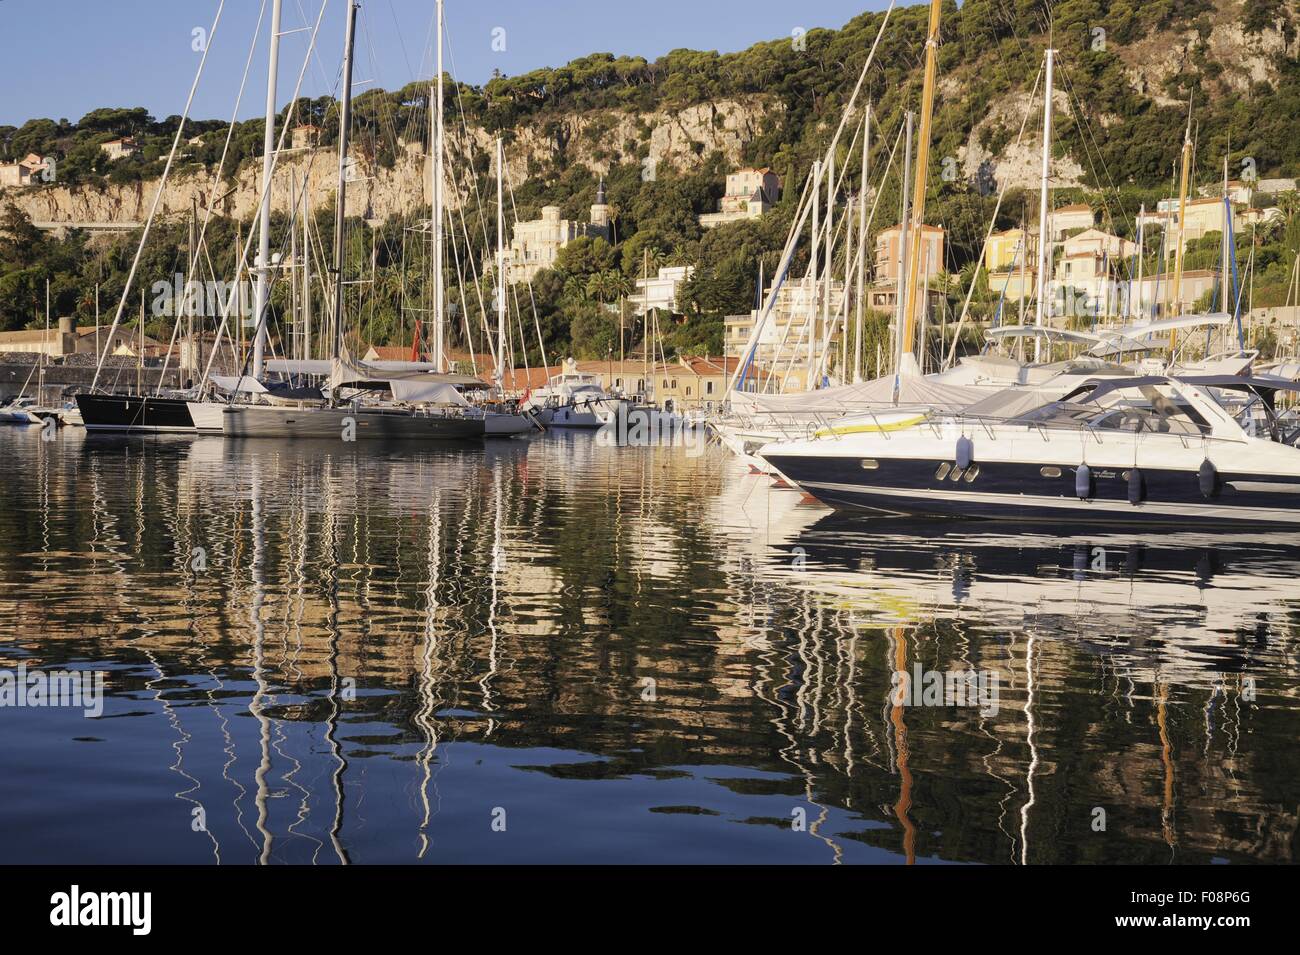 France, Cote d'Azur, Villefranche sur Mer Stock Photo